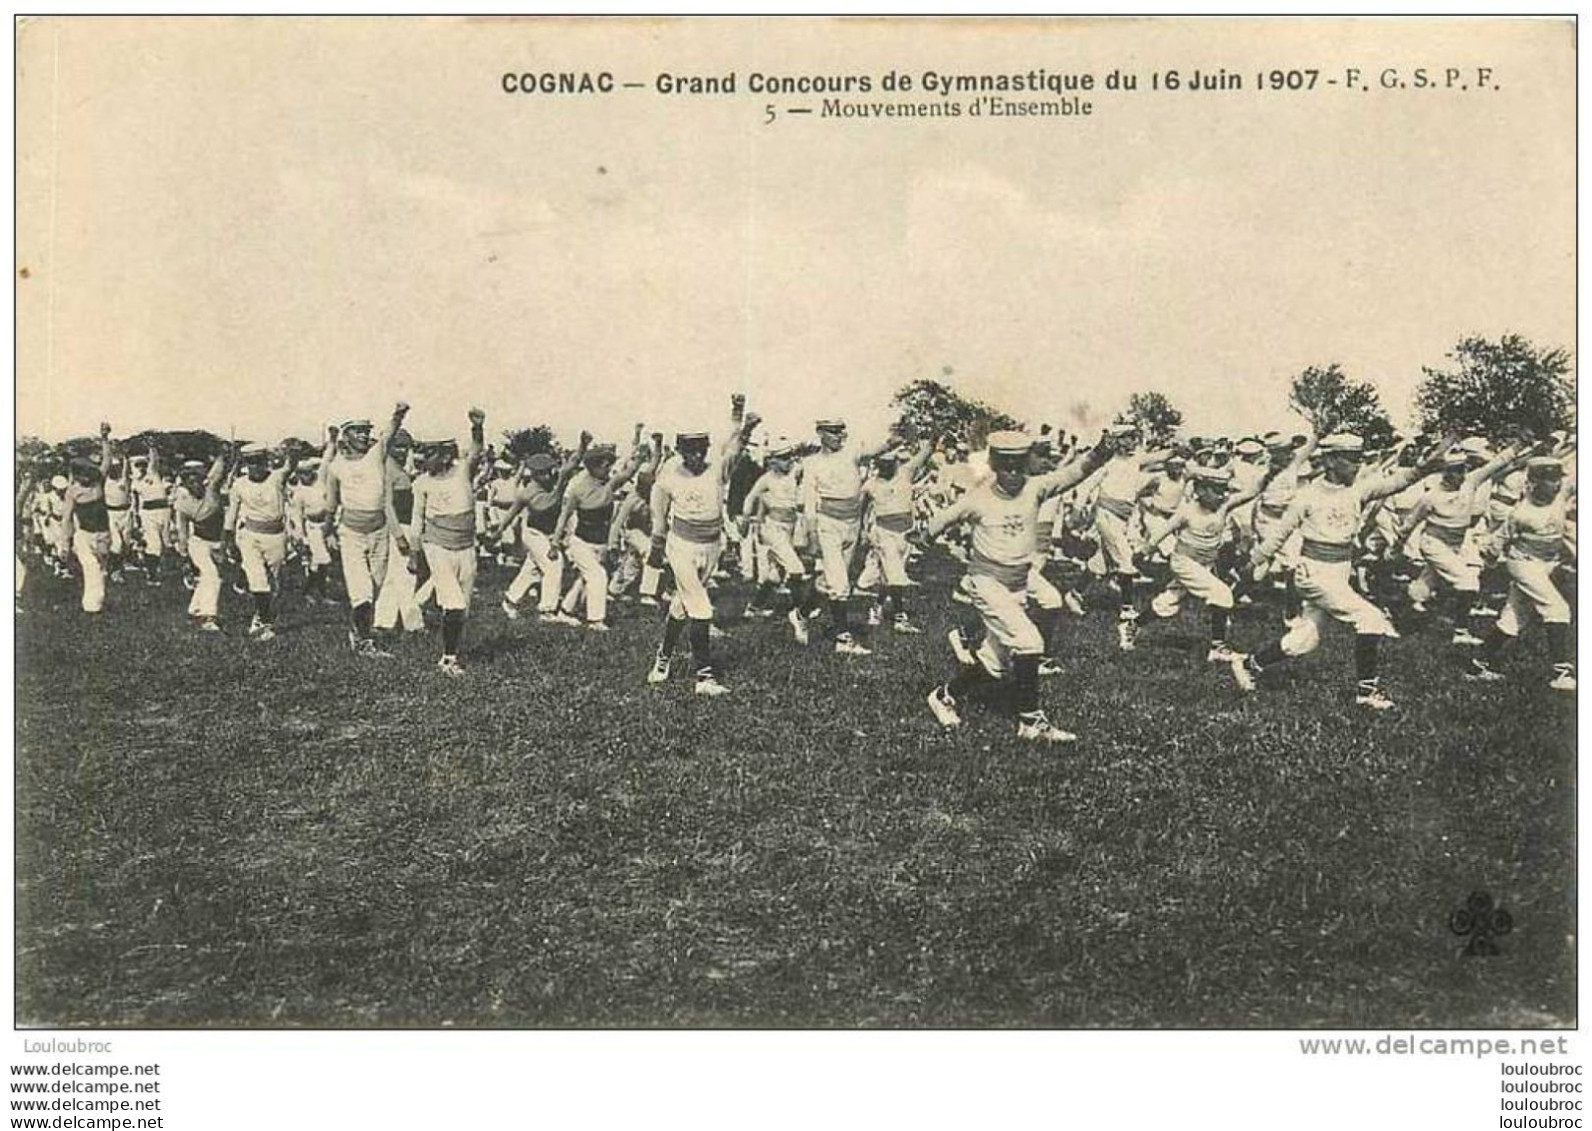 16 COGNAC GRAND CONCOURS DE GYMNASTIQUE 16 JUIN 1907 F.G.S.P.F.  MOUVEMENTS D'ENSEMBLE - Cognac